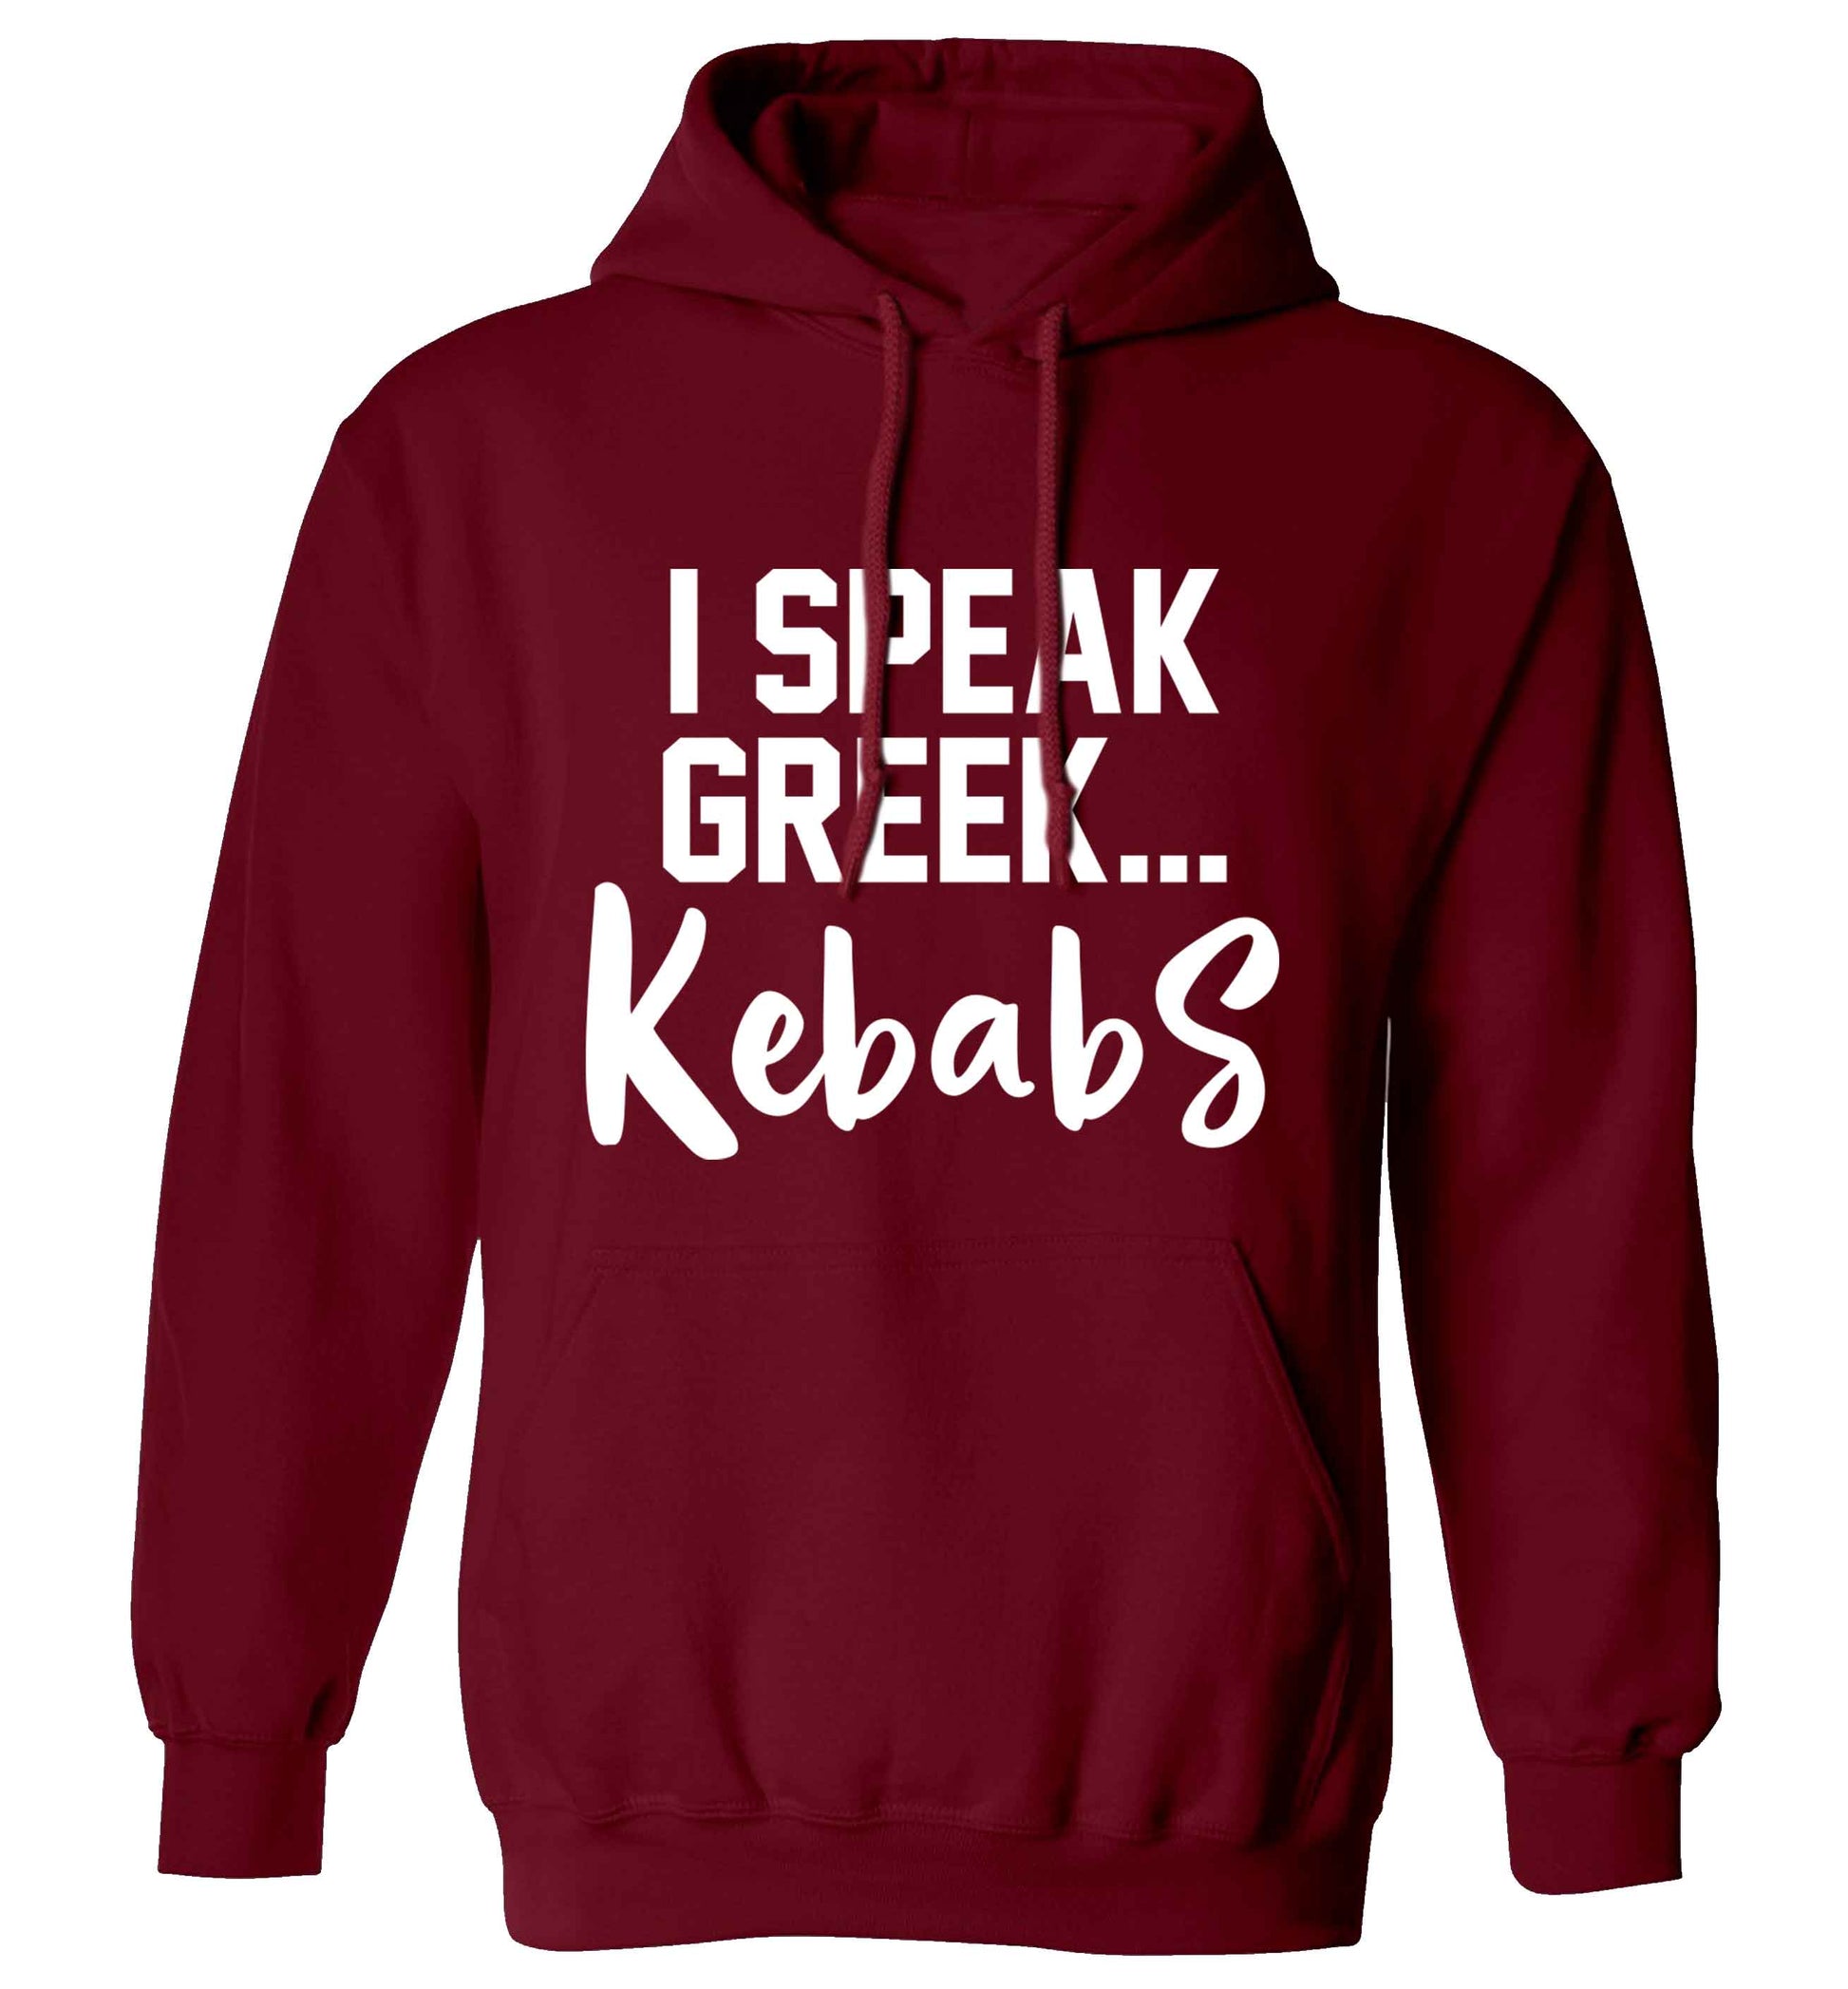 I speak Greek...kebabs adults unisex maroon hoodie 2XL